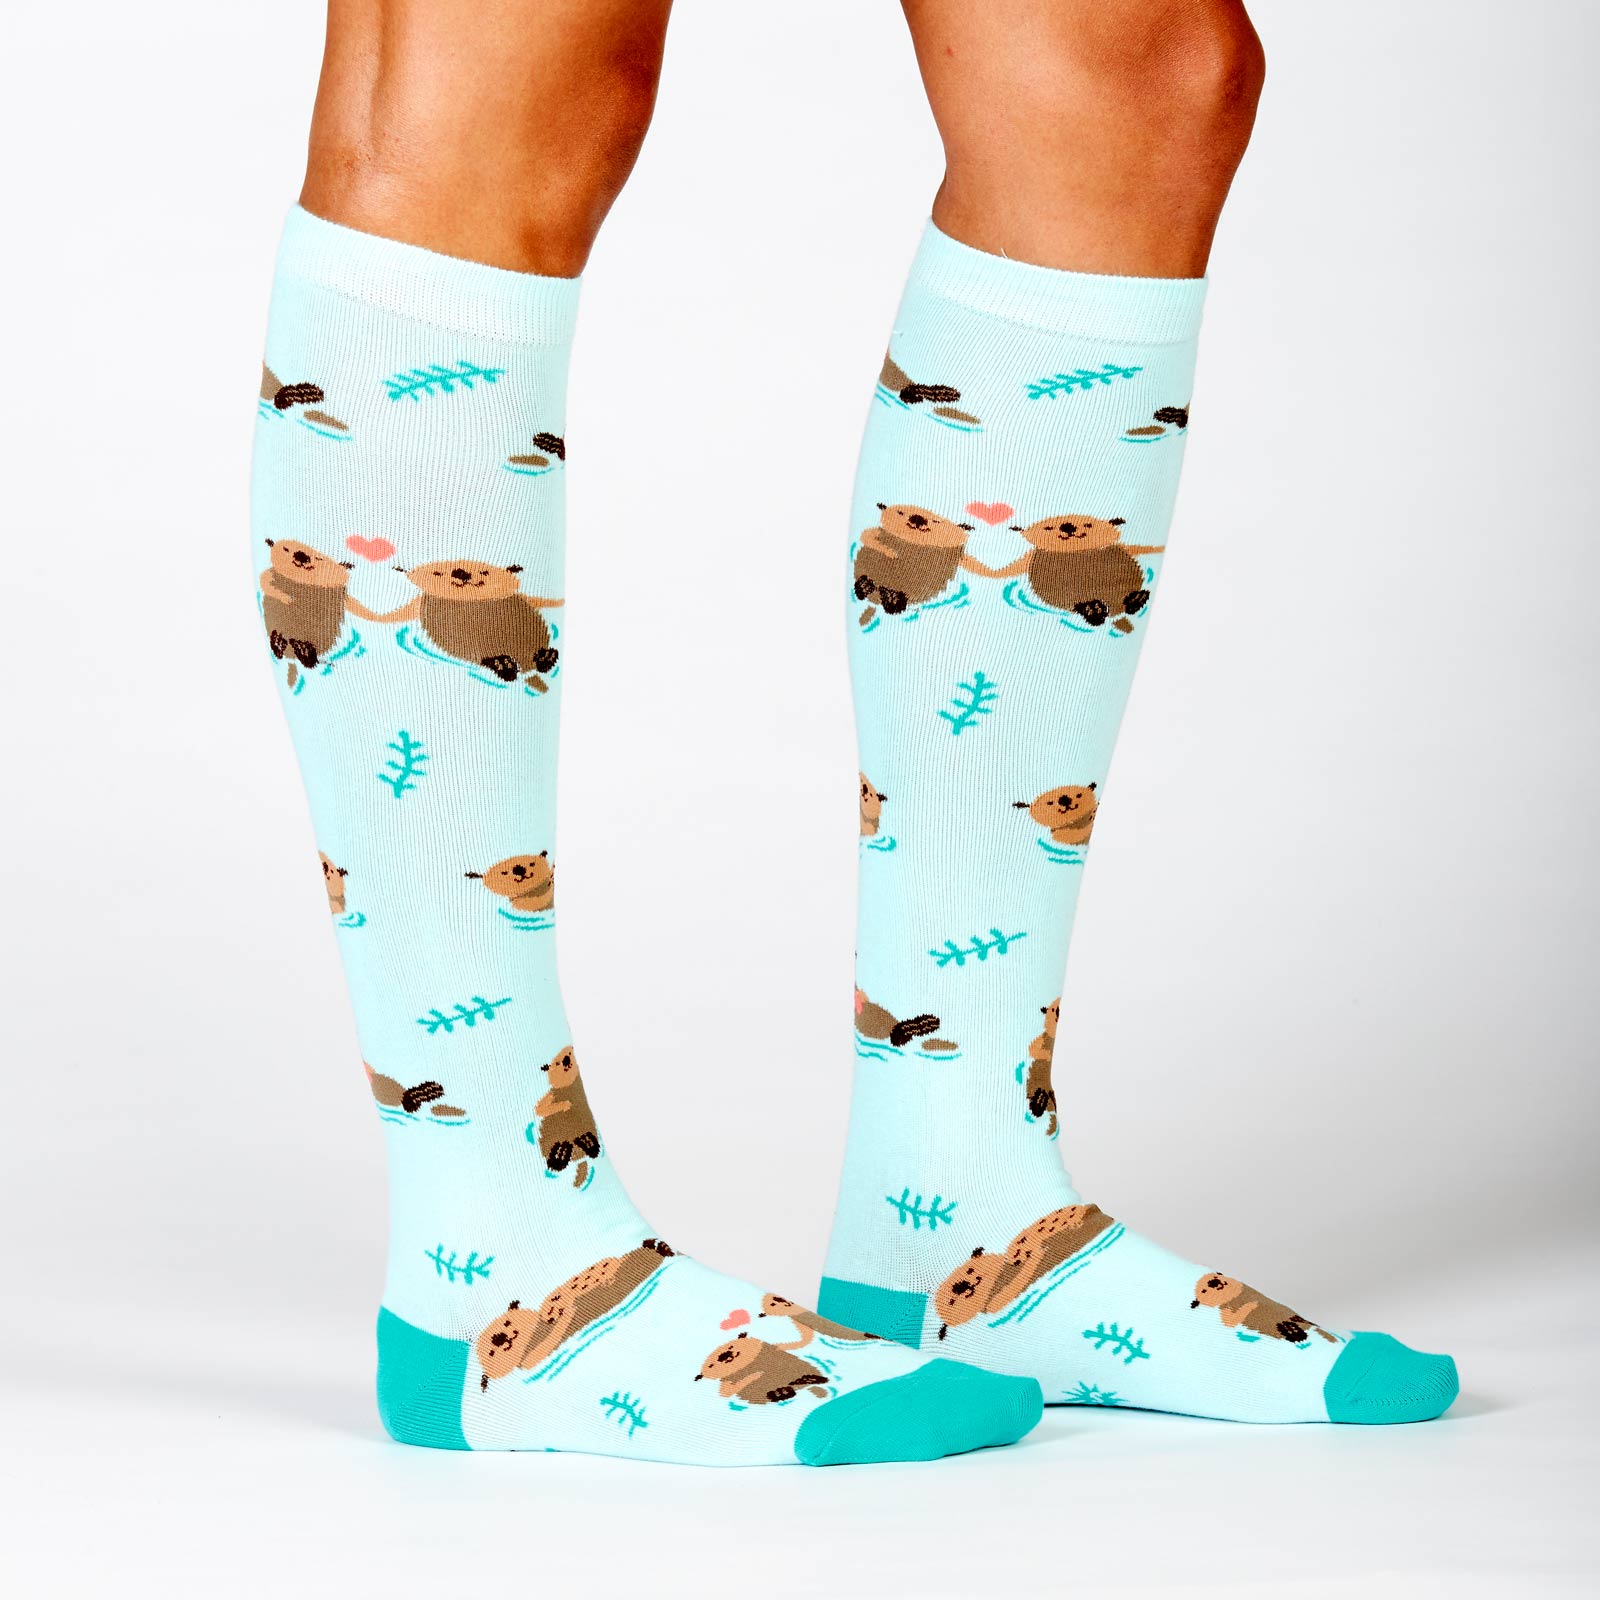 Sock It To Me My Otter Half women's socks on model showing otters in ocean 